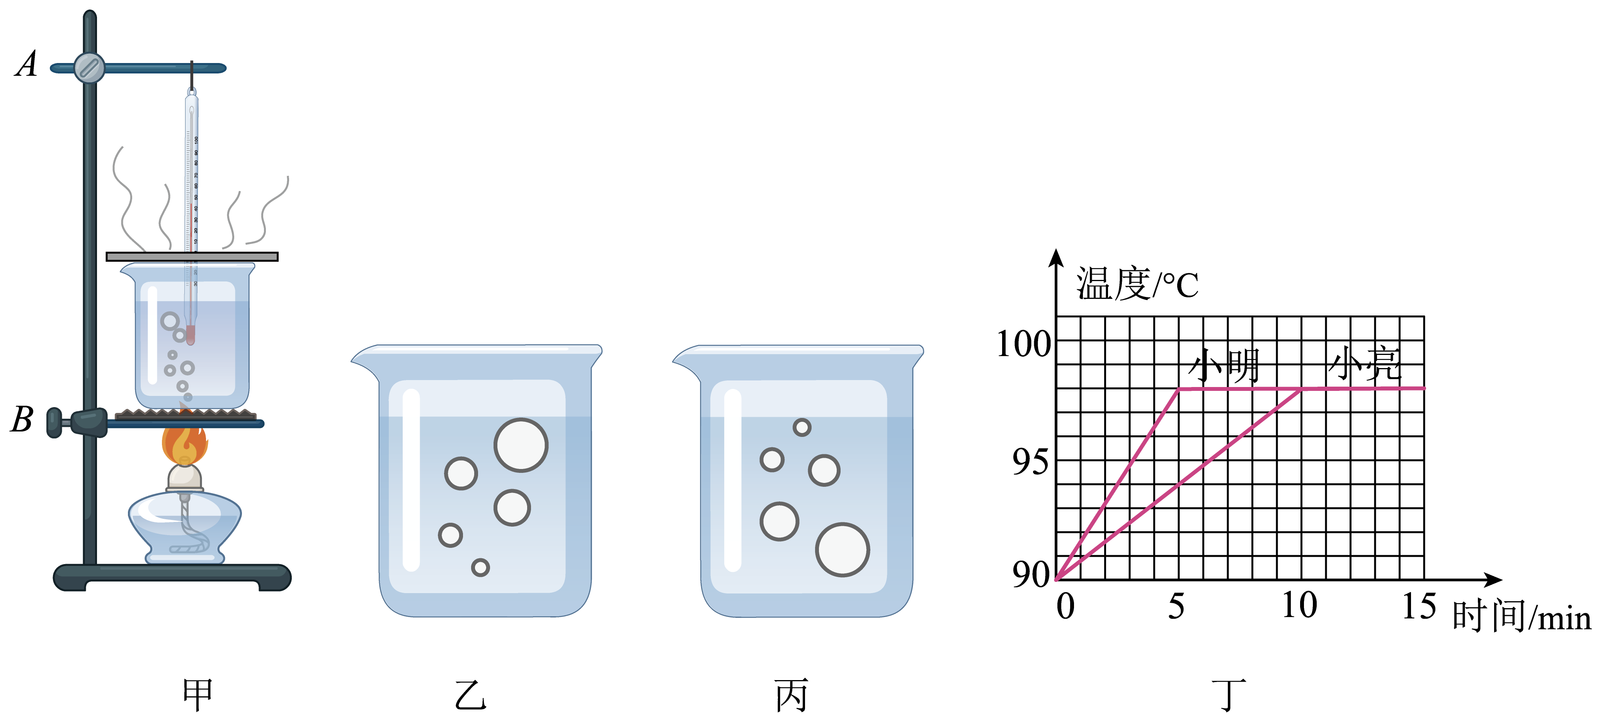 【推荐1】小明和小亮同学在探究水沸腾时温度变化的特点的实验中